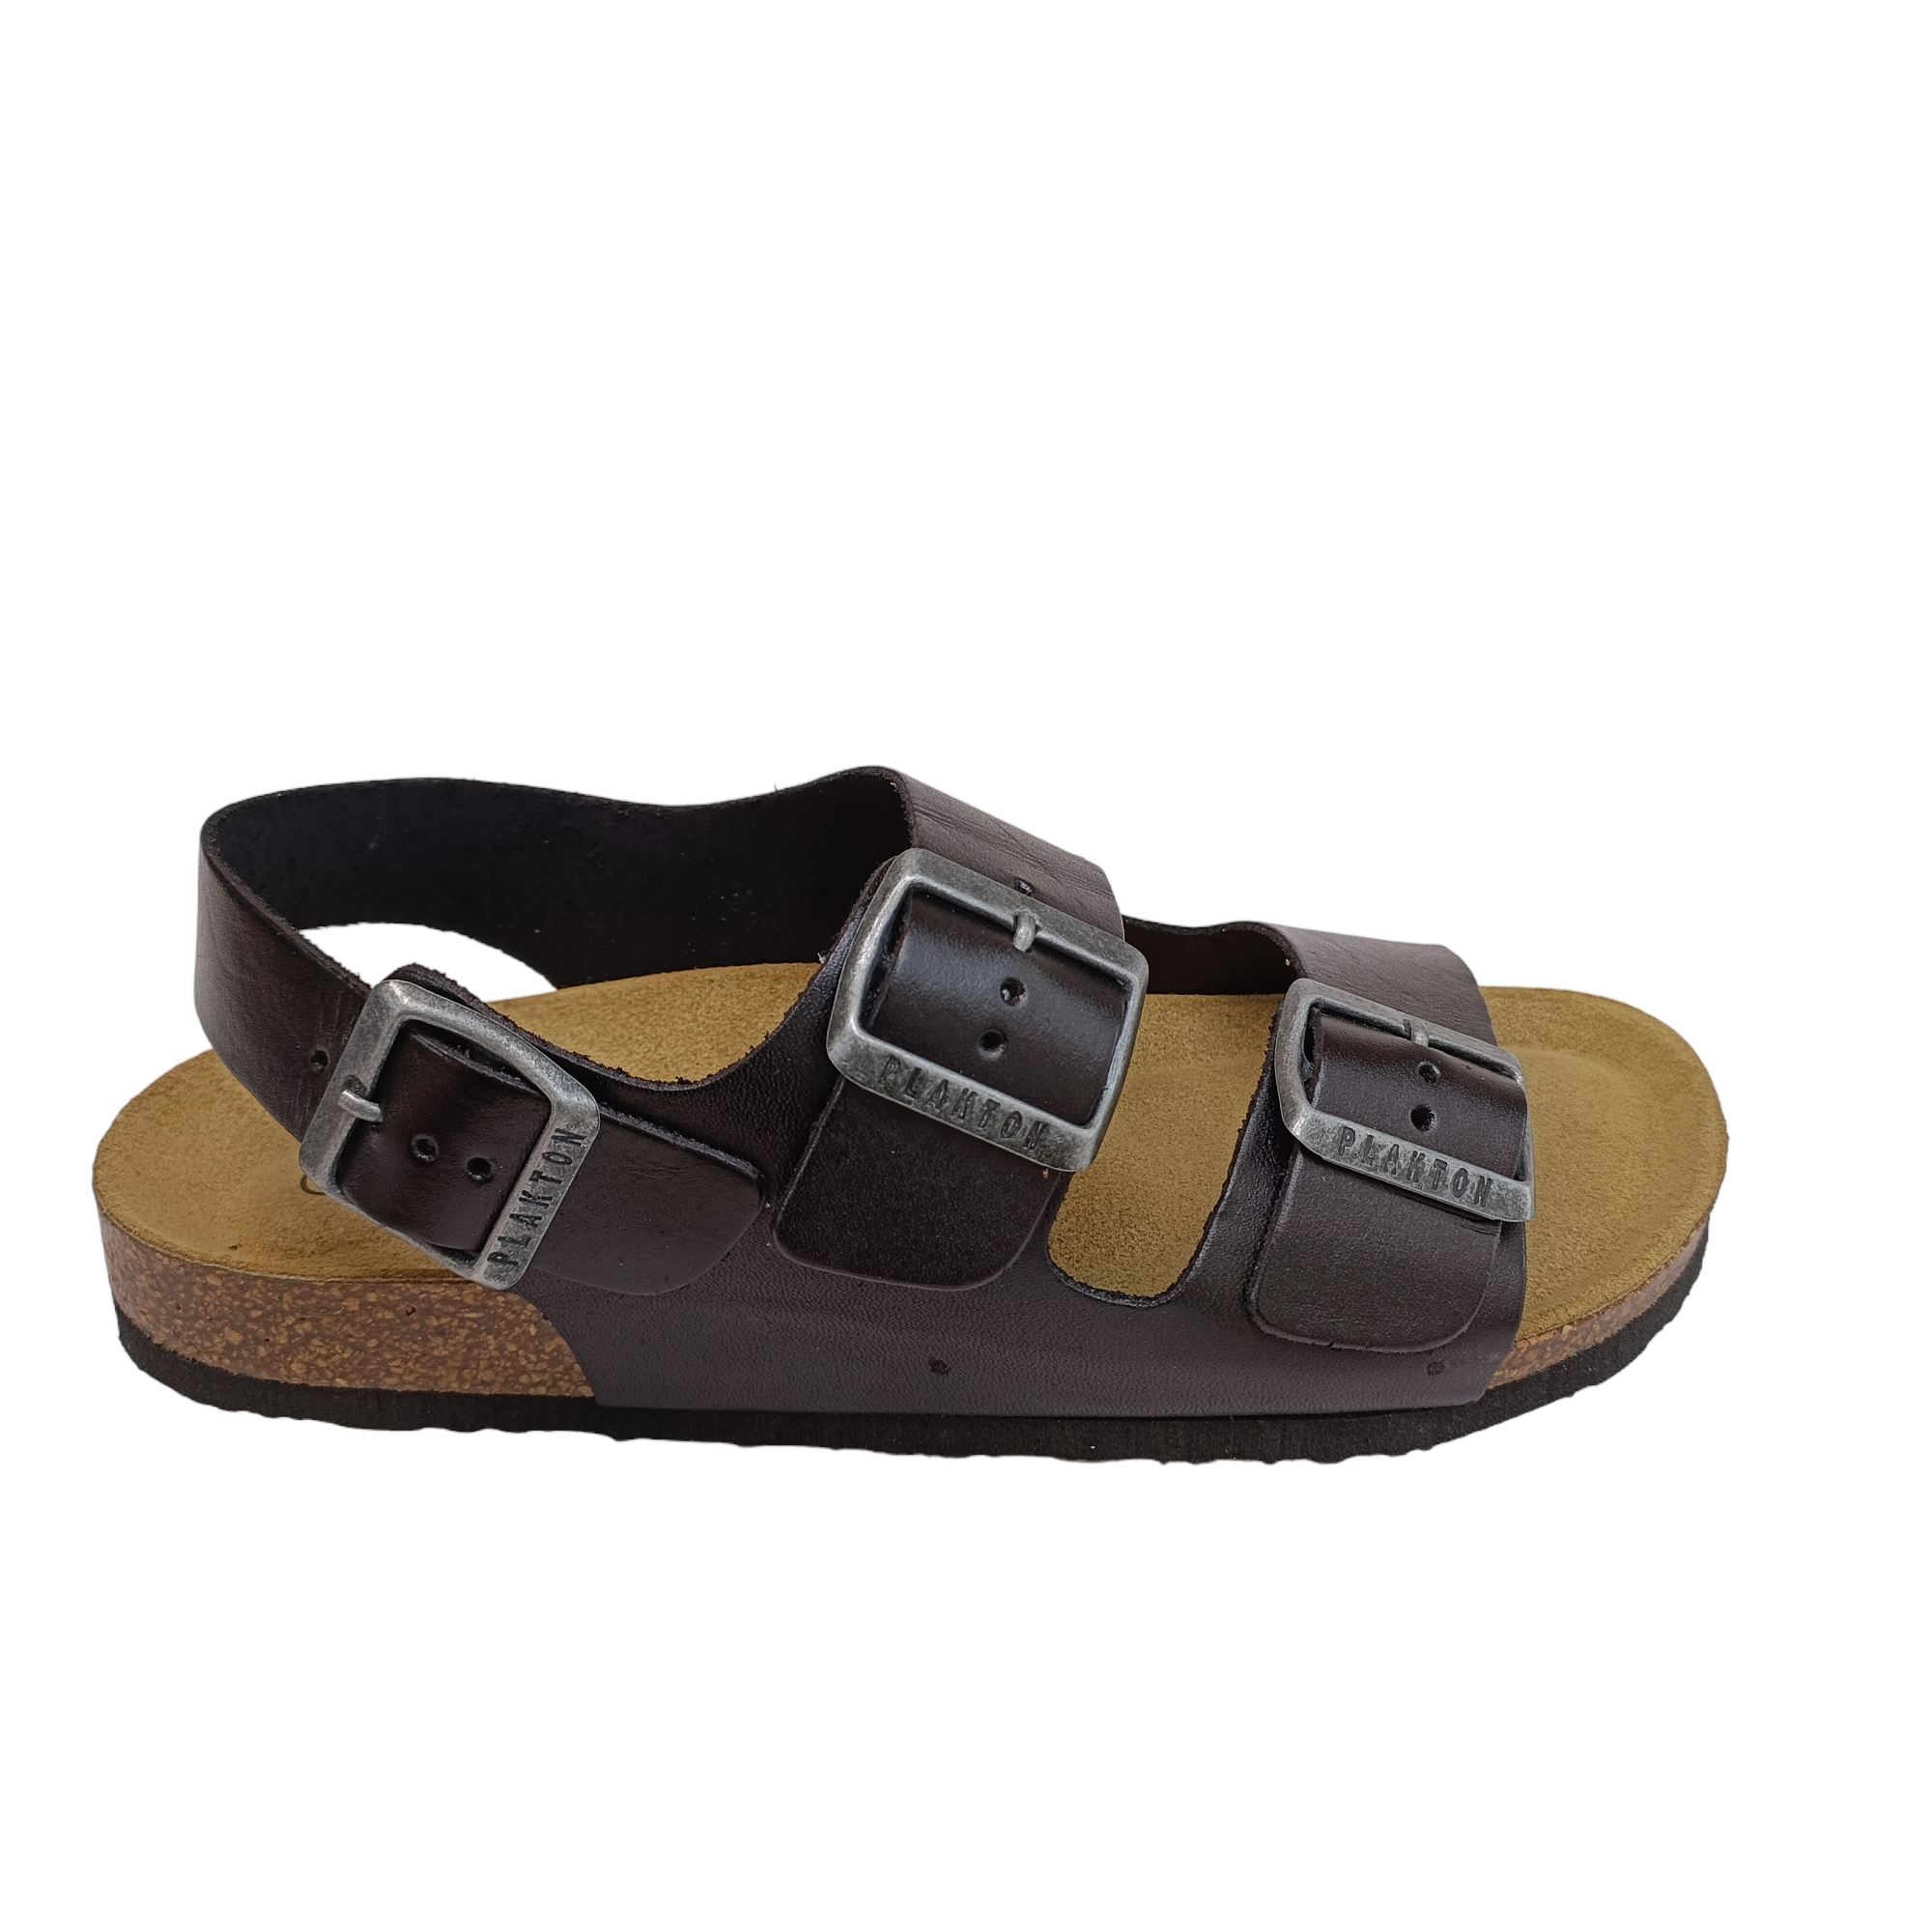 Pretzel - shoe&me - Plakton - Sandal - Sandals, Summer, Womens